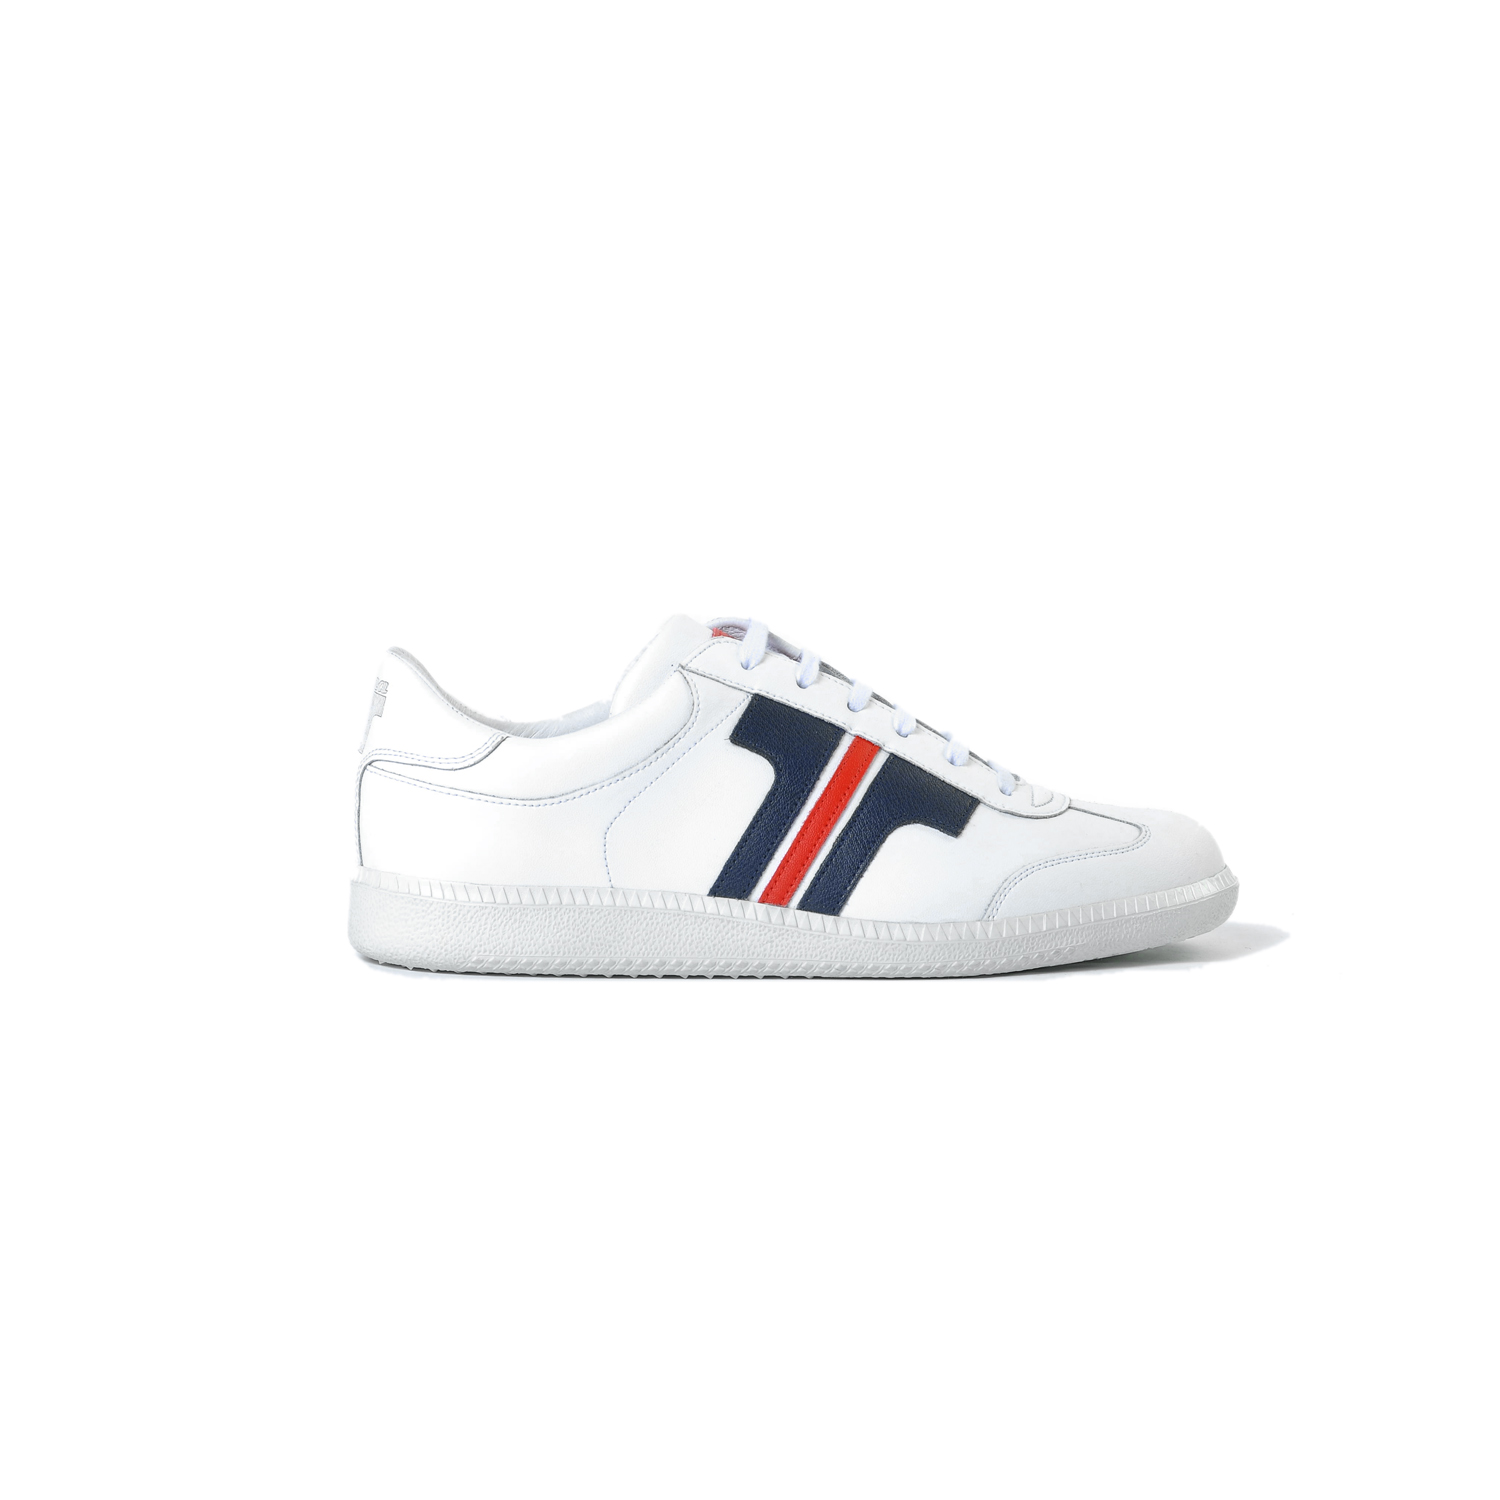 Tisza shoes-Compakt-White-classic